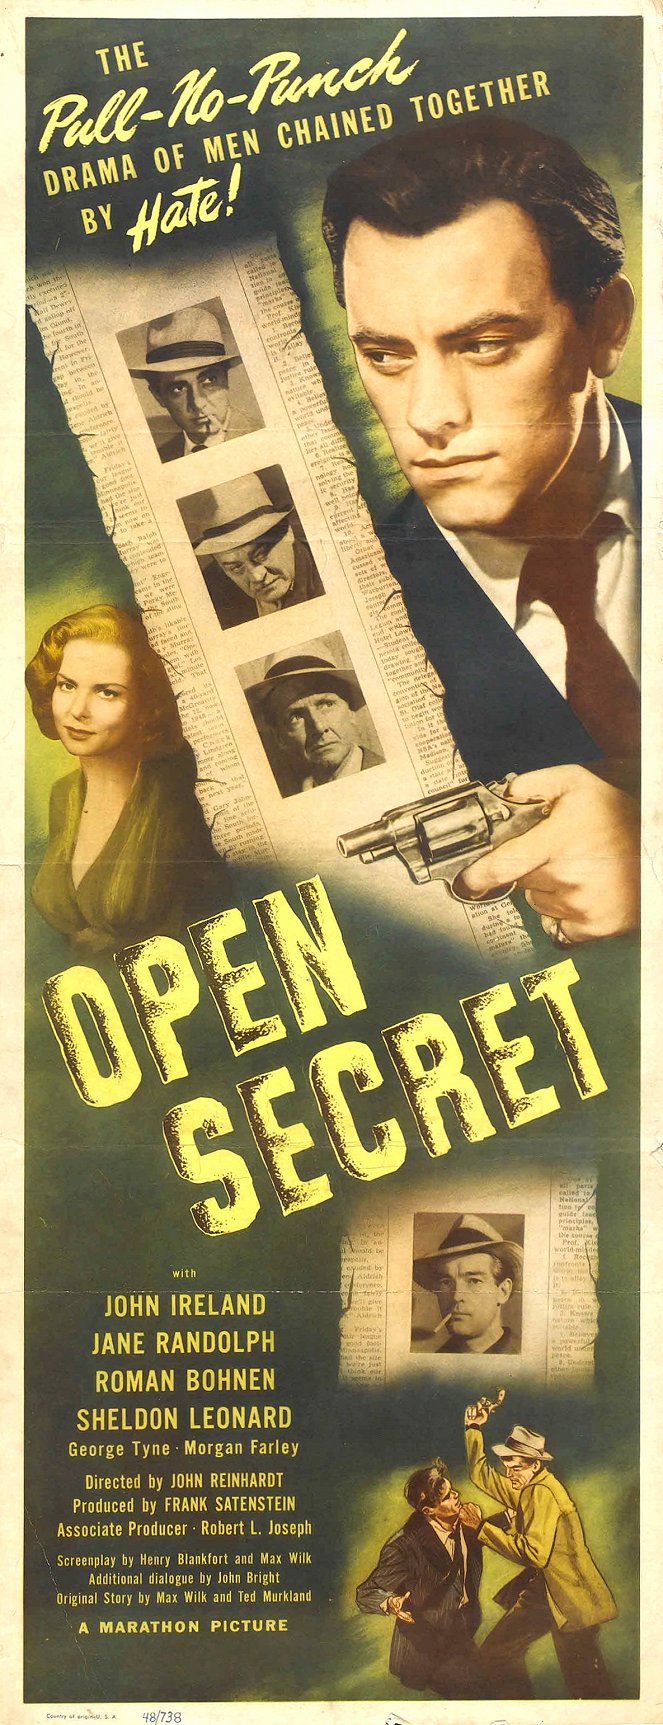 Open Secret - Plakate